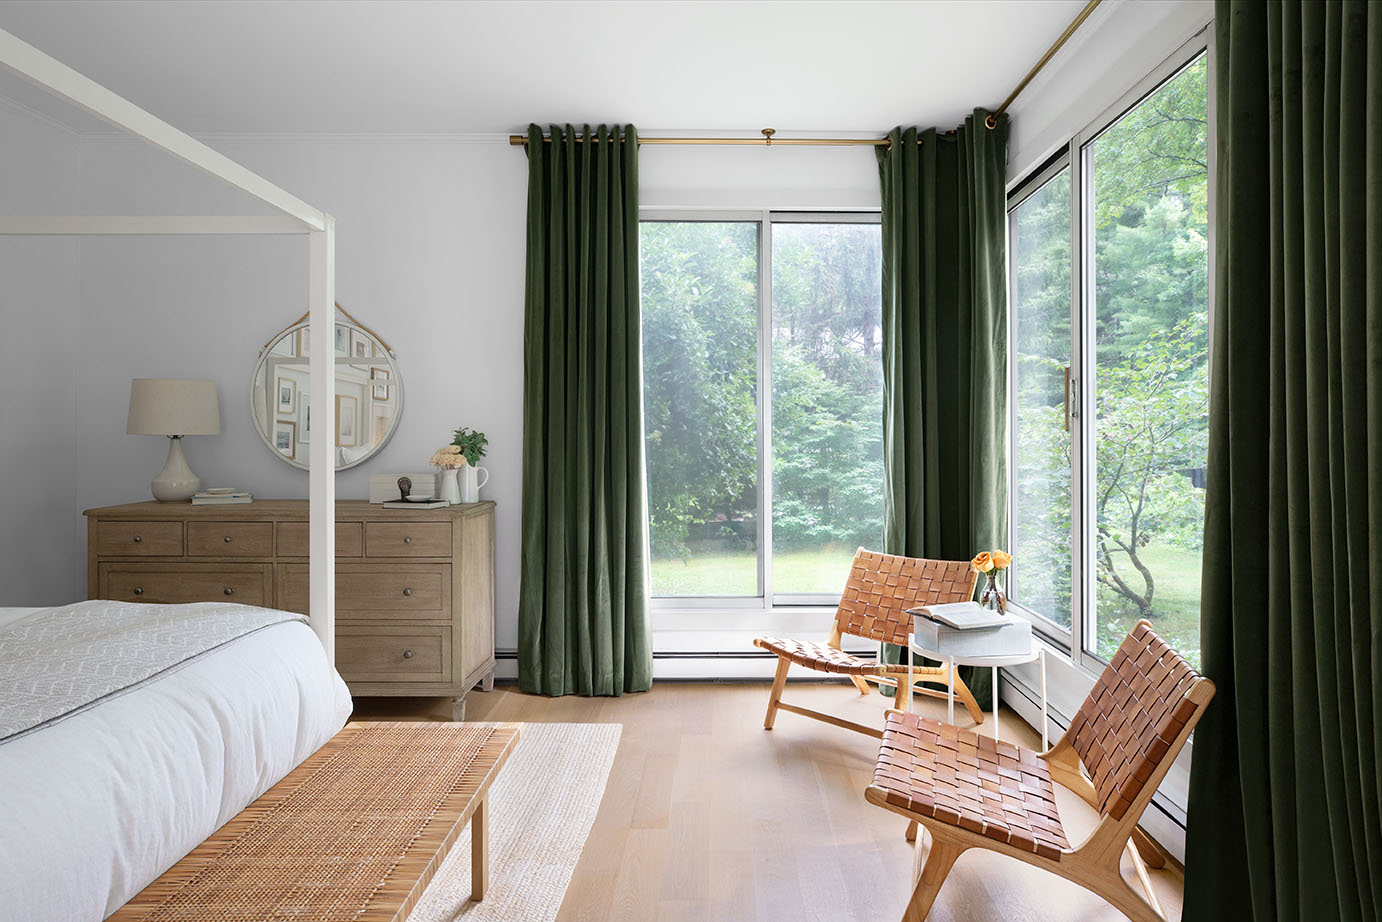 Des rideaux de velours vert forêt recouvrent deux grandes fenêtres dans une chambre moderne.